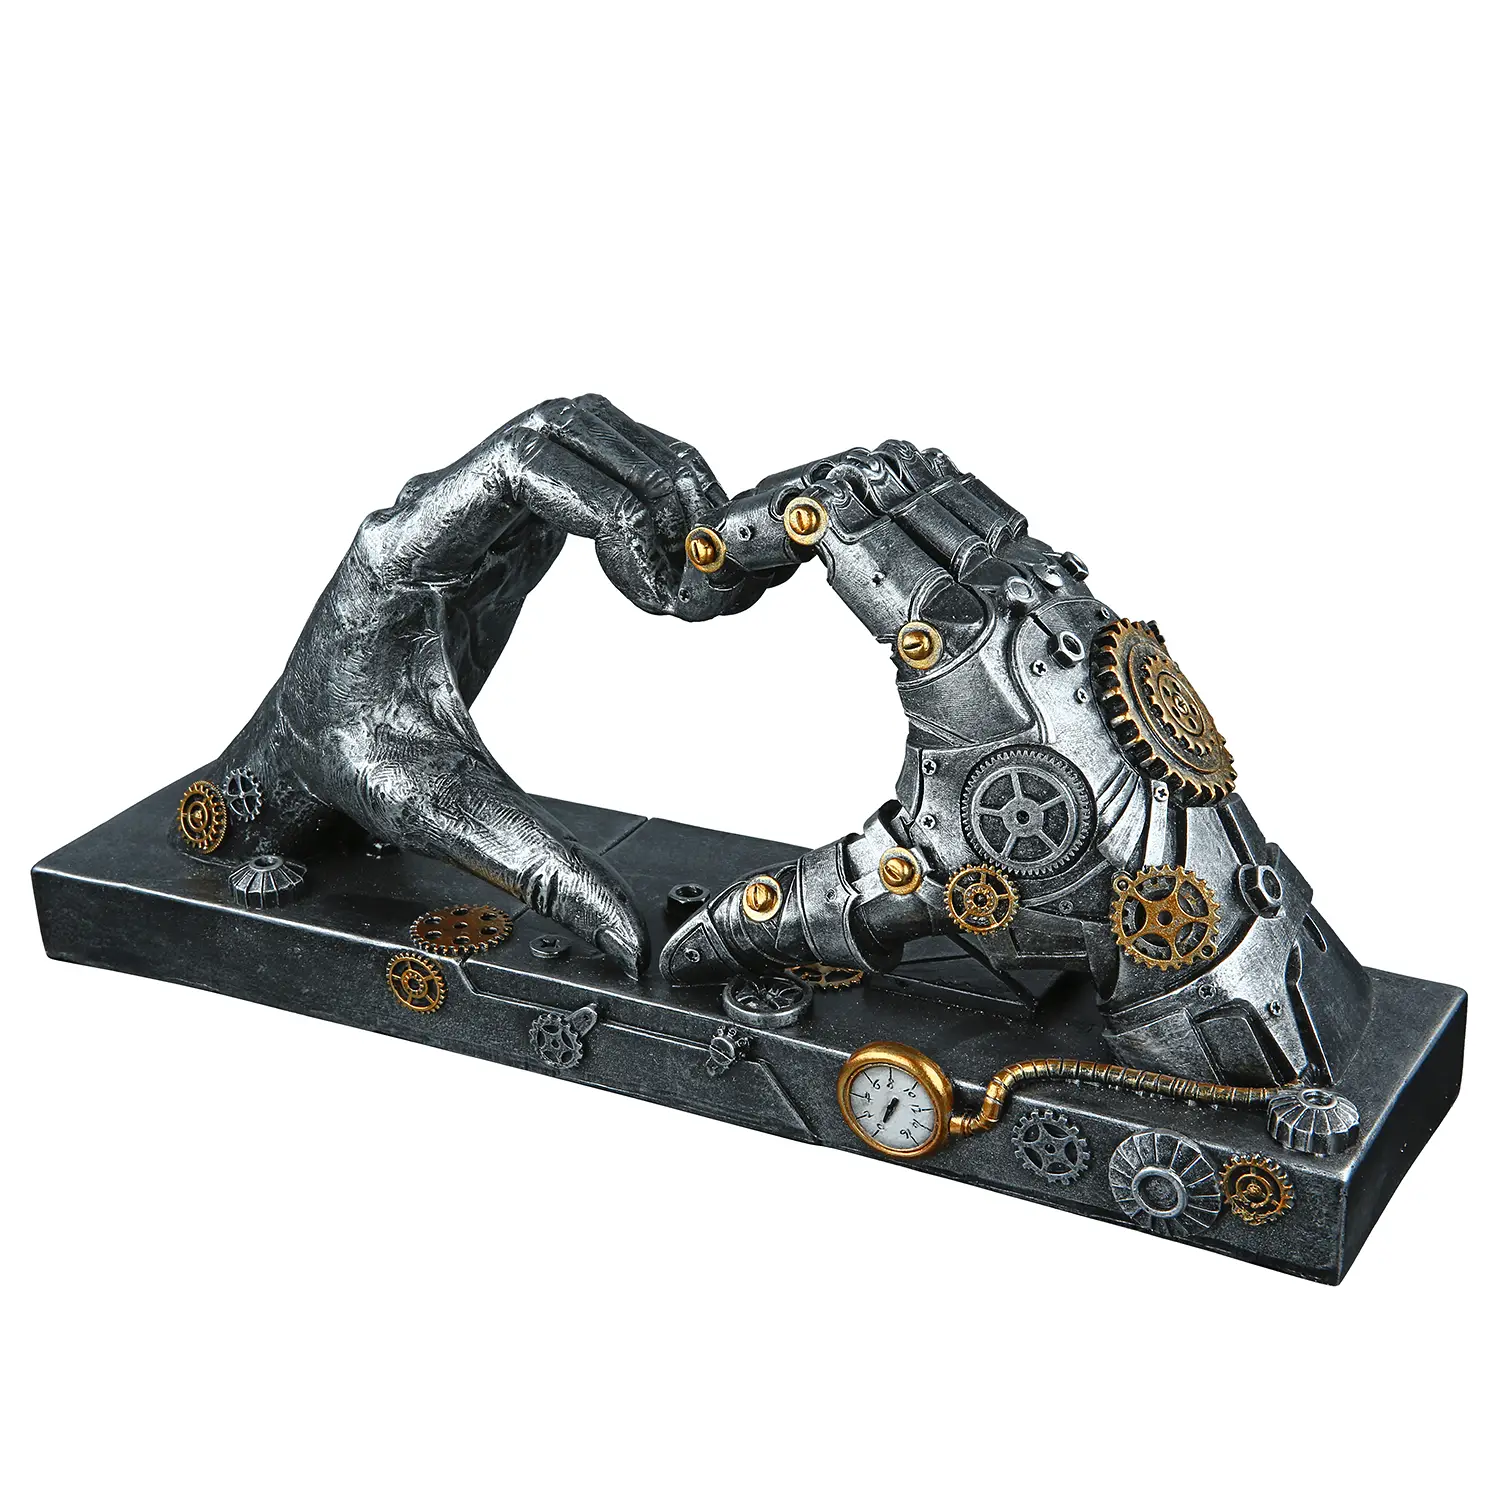 Steampunk Skulptur Hand